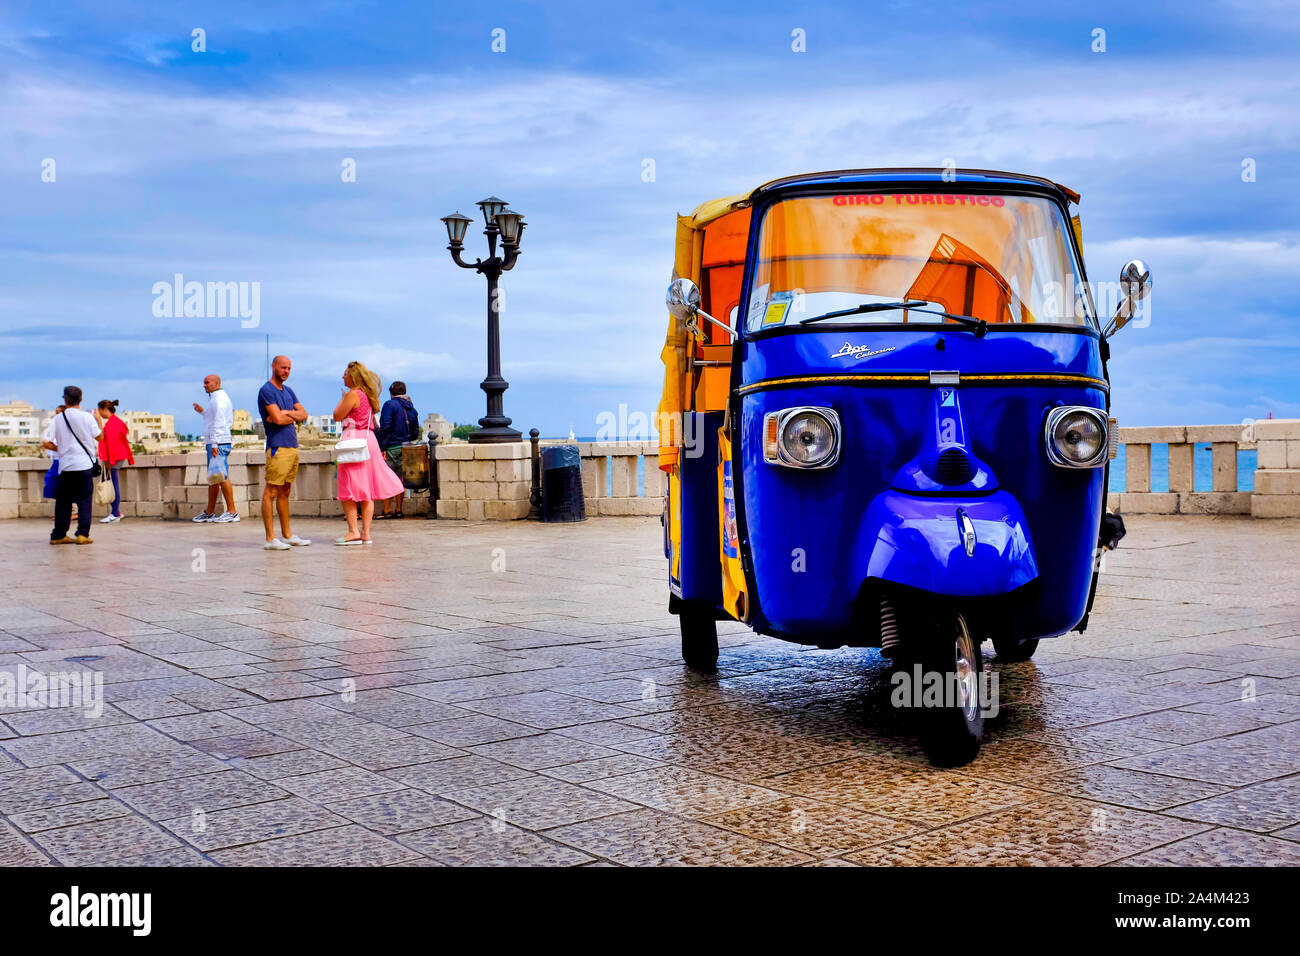 An auto-rickshaw in Piazzale degli Eroi, Otranto, Italy Stock Photo